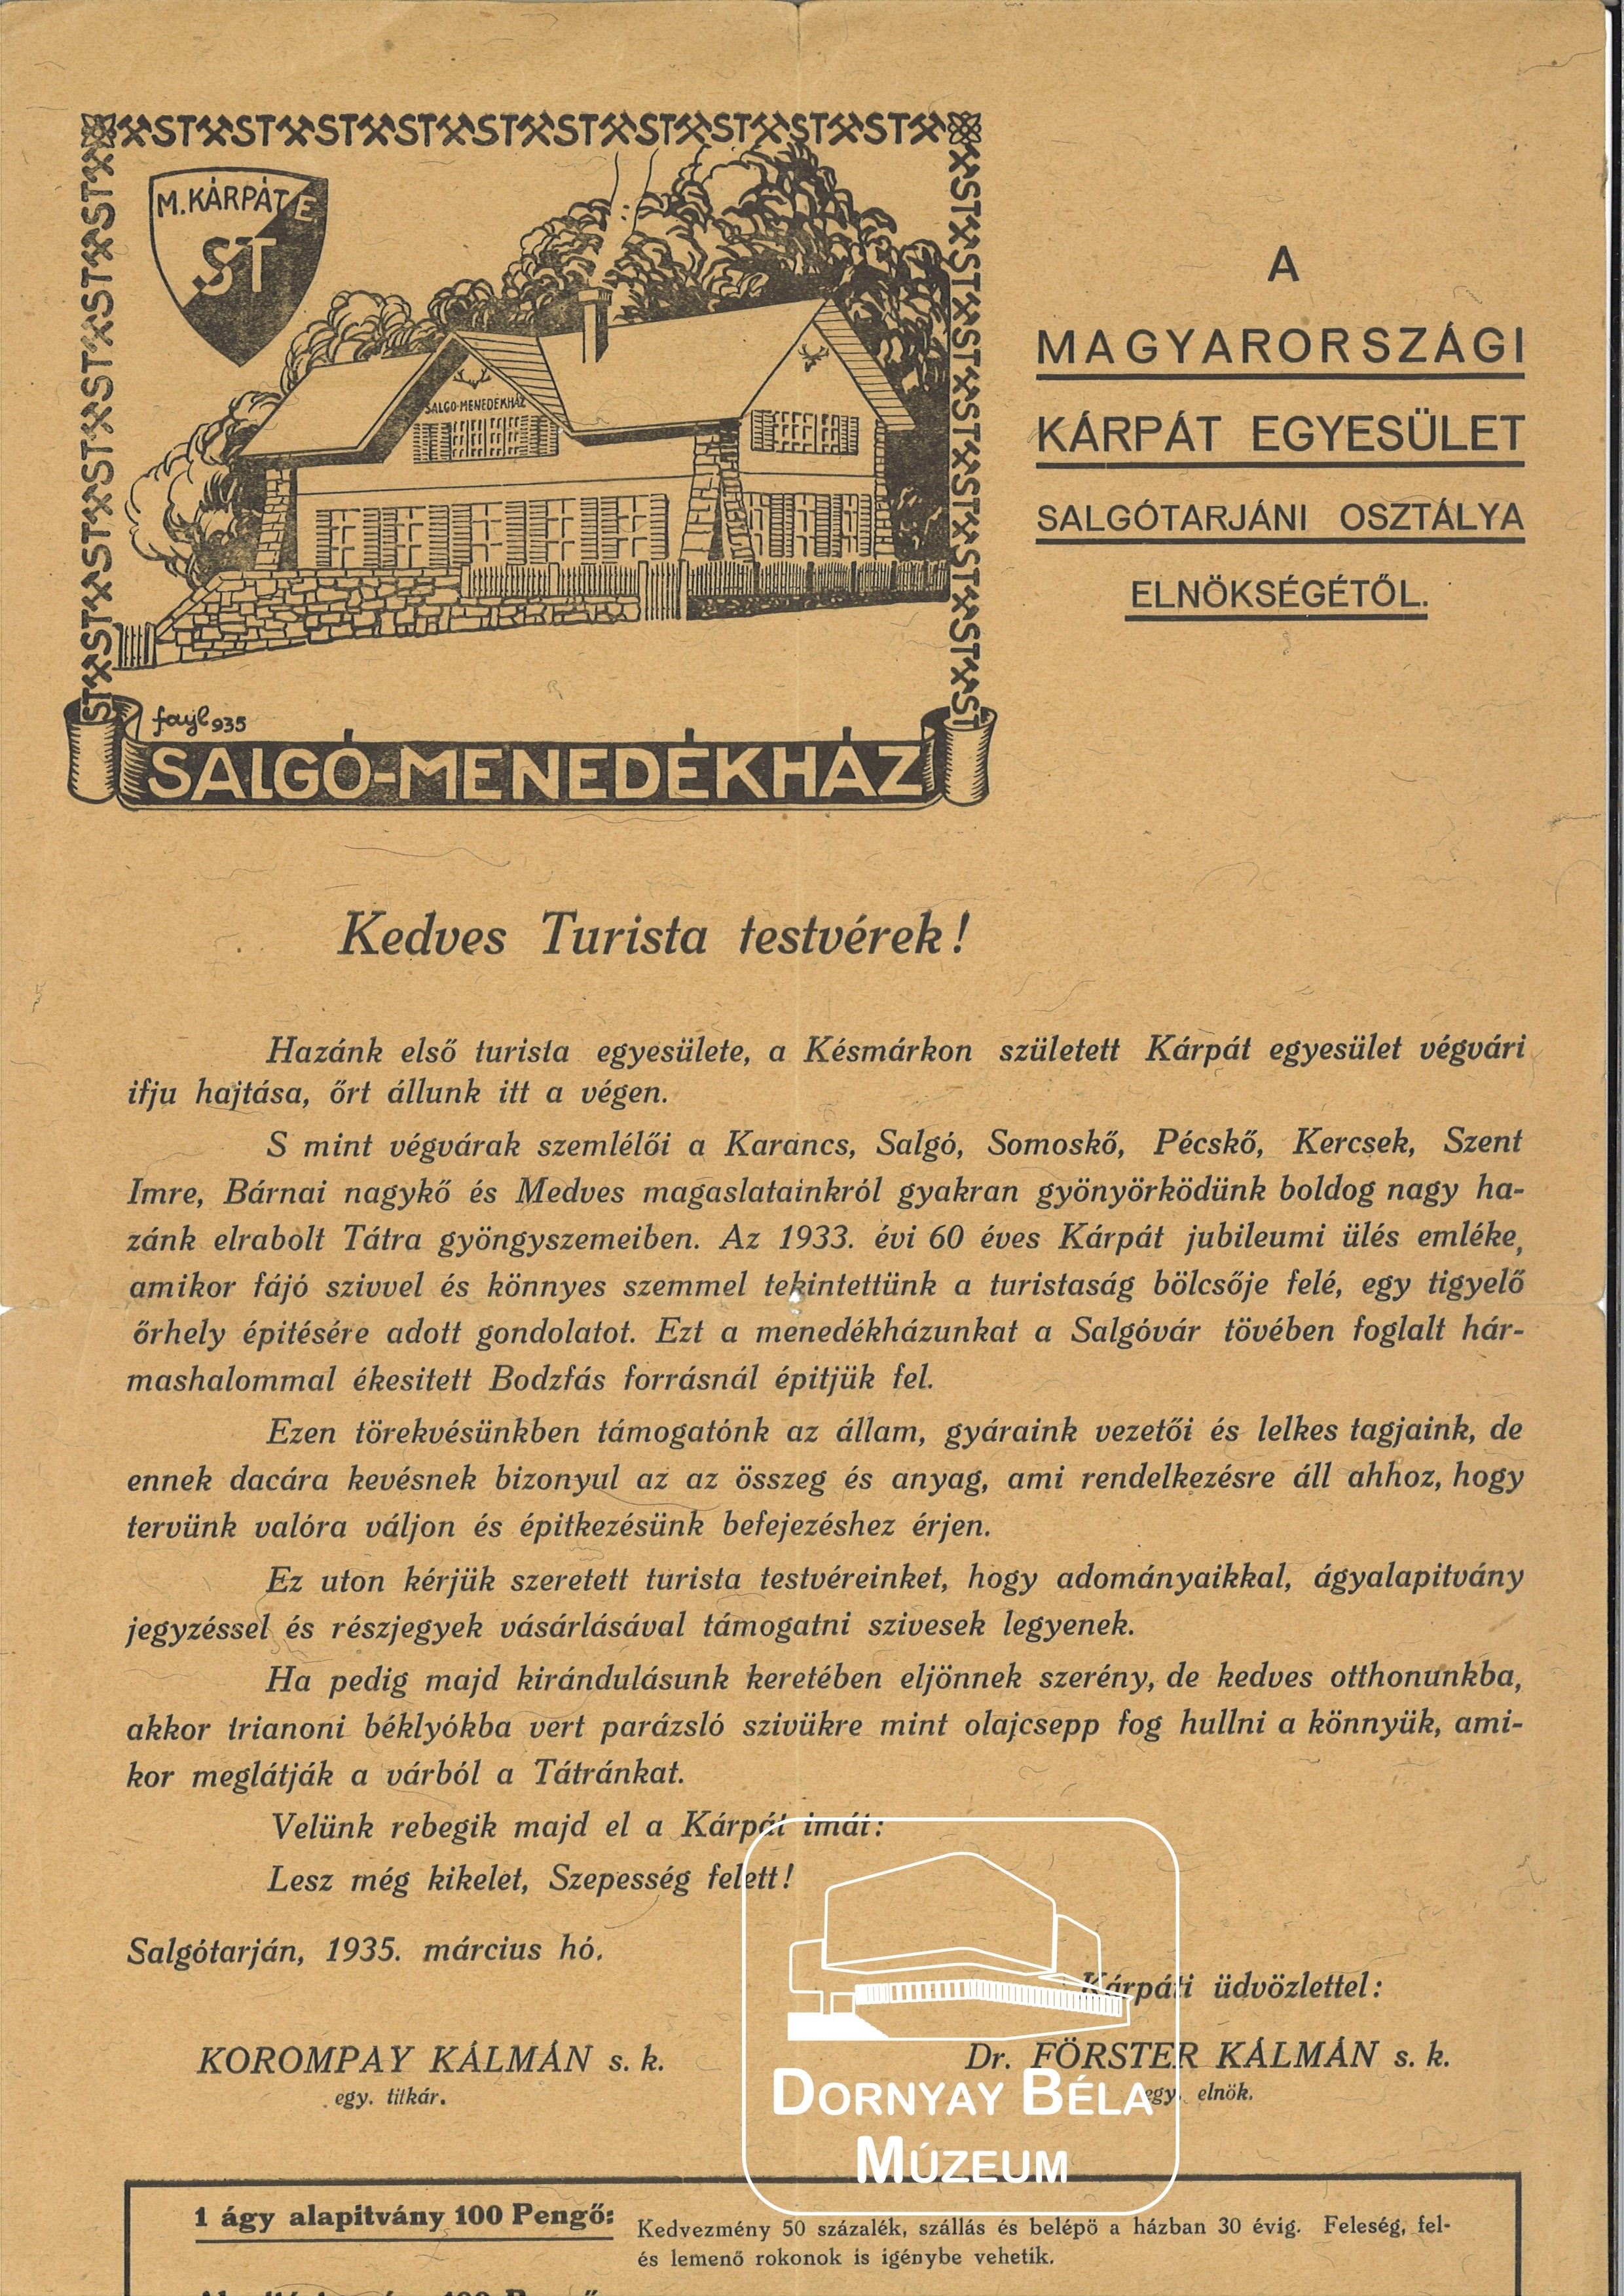 A Magyarországi Kárpát Egyesület Salgótarjáni Osztálya Elnökségének felhívása. (Dornyay Béla Múzeum, Salgótarján CC BY-NC-SA)